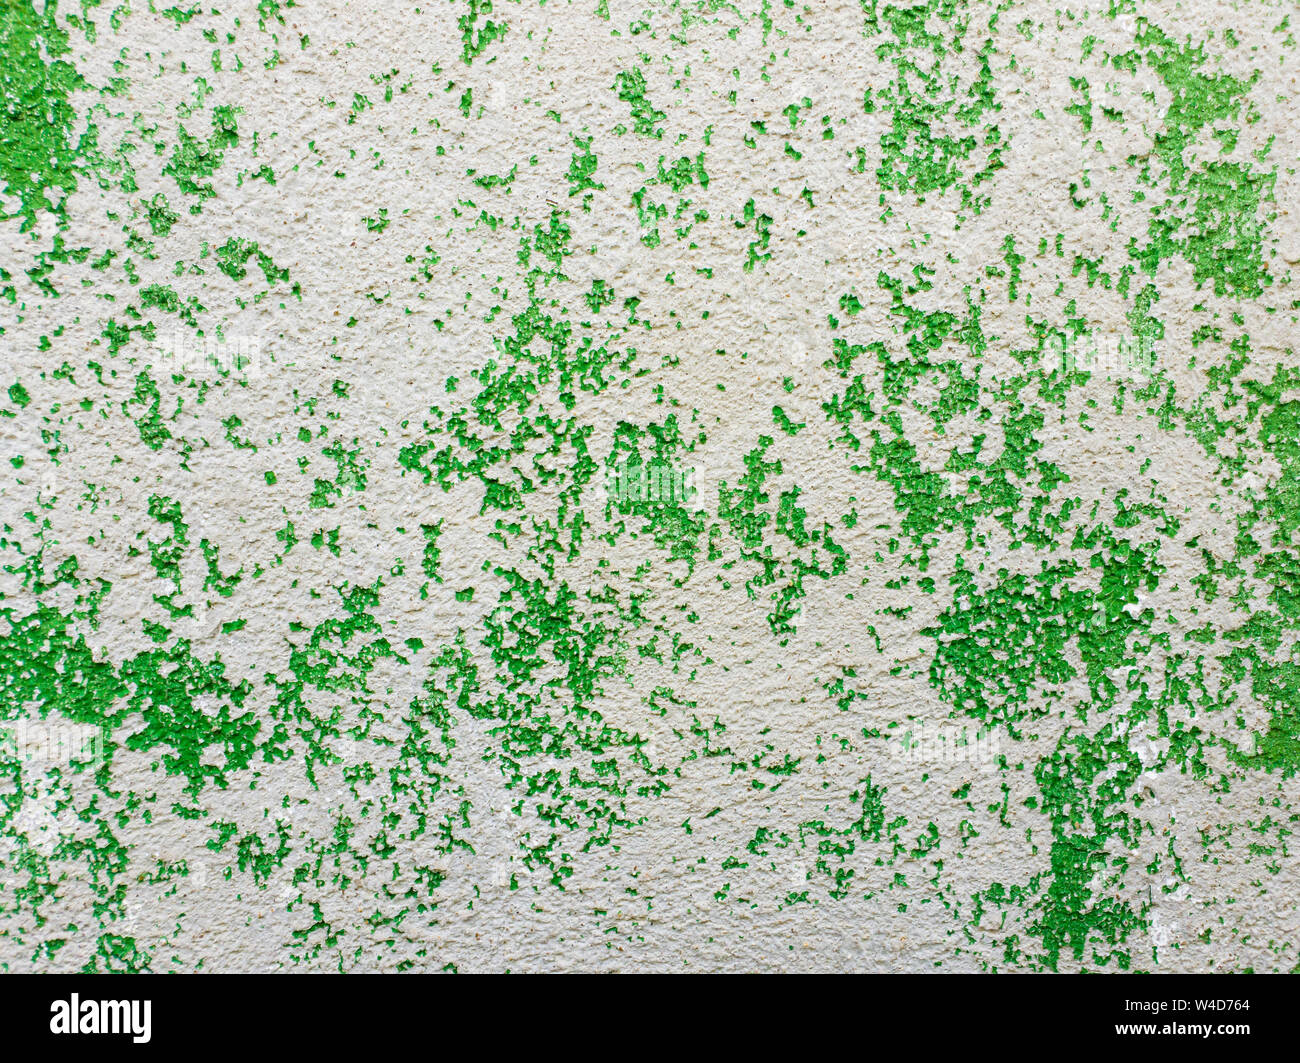 Abstrakte Fläche als grüne Farbe eine Betonwand Hintergrund. Alte grungy, verwitterte lackiert Baustruktur. Risse, dreckige Textur w Stockfoto